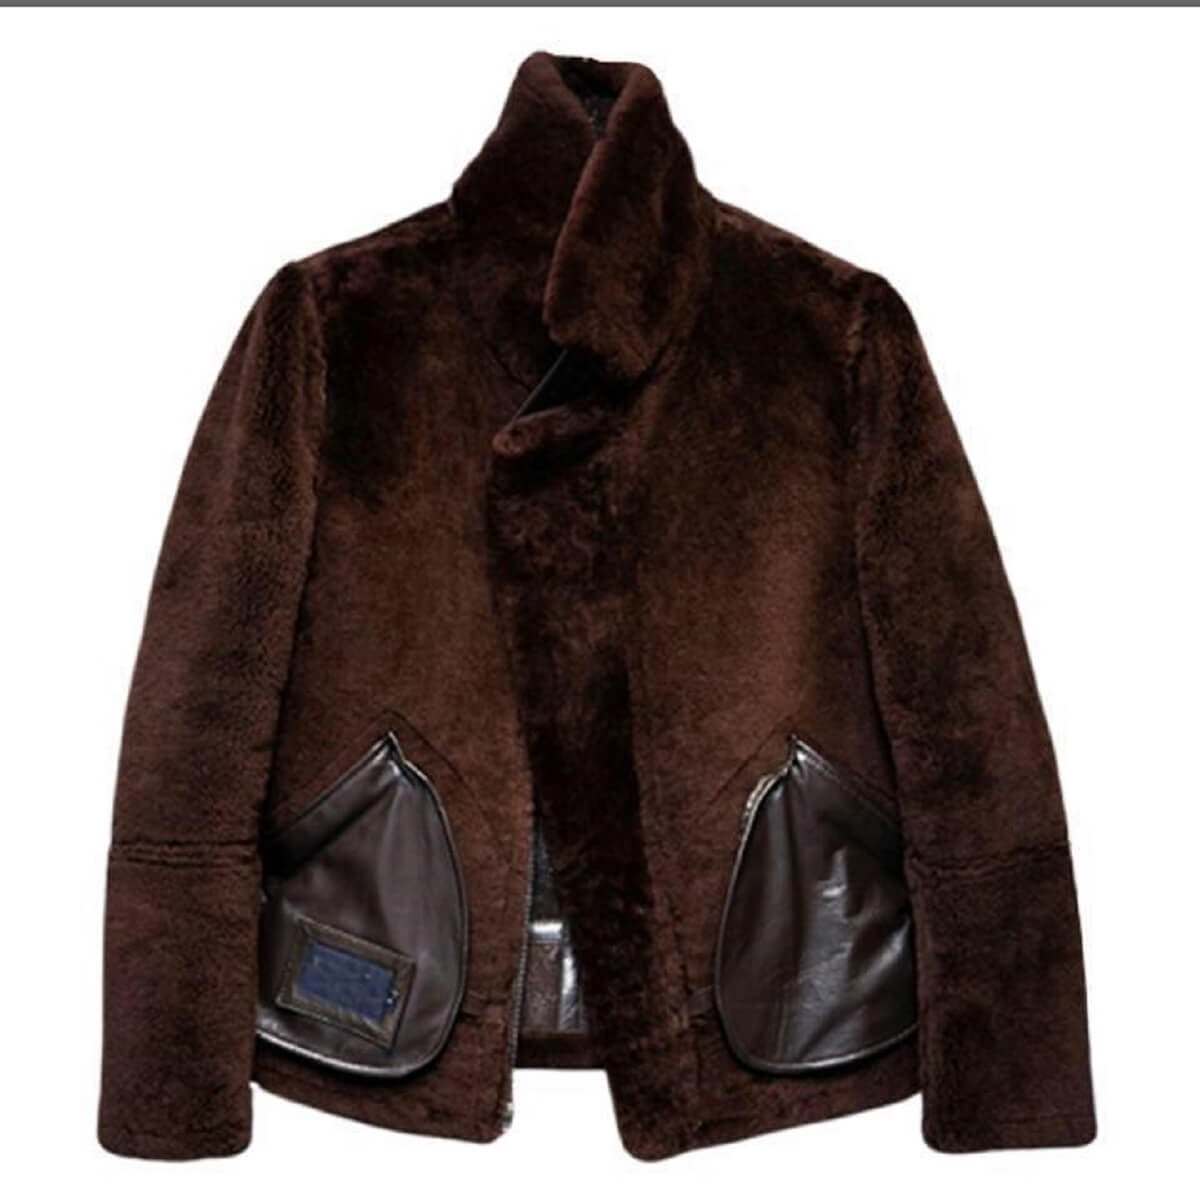 Vintage Brown Leather Jacket For Men's